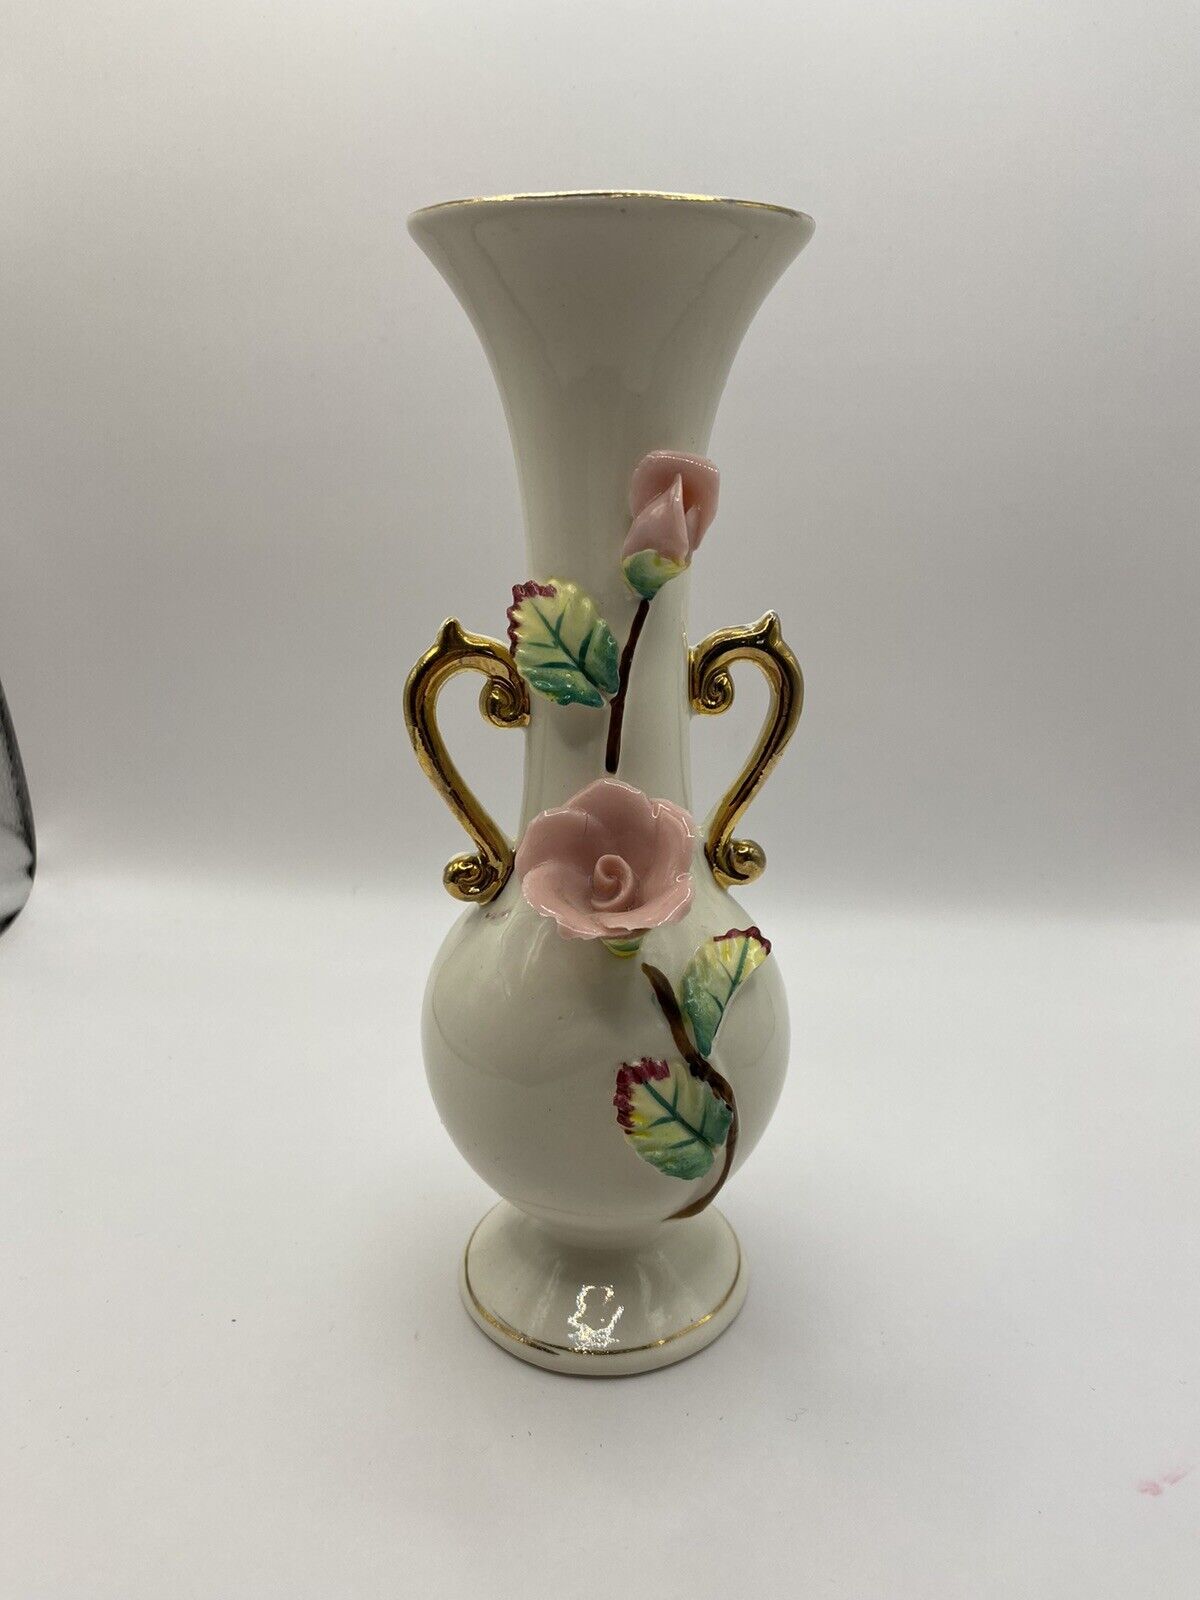 Ucagco Ceramic Japan Vase w/Applied Pink Roses & Leaves & Gilt Handles - Vintage